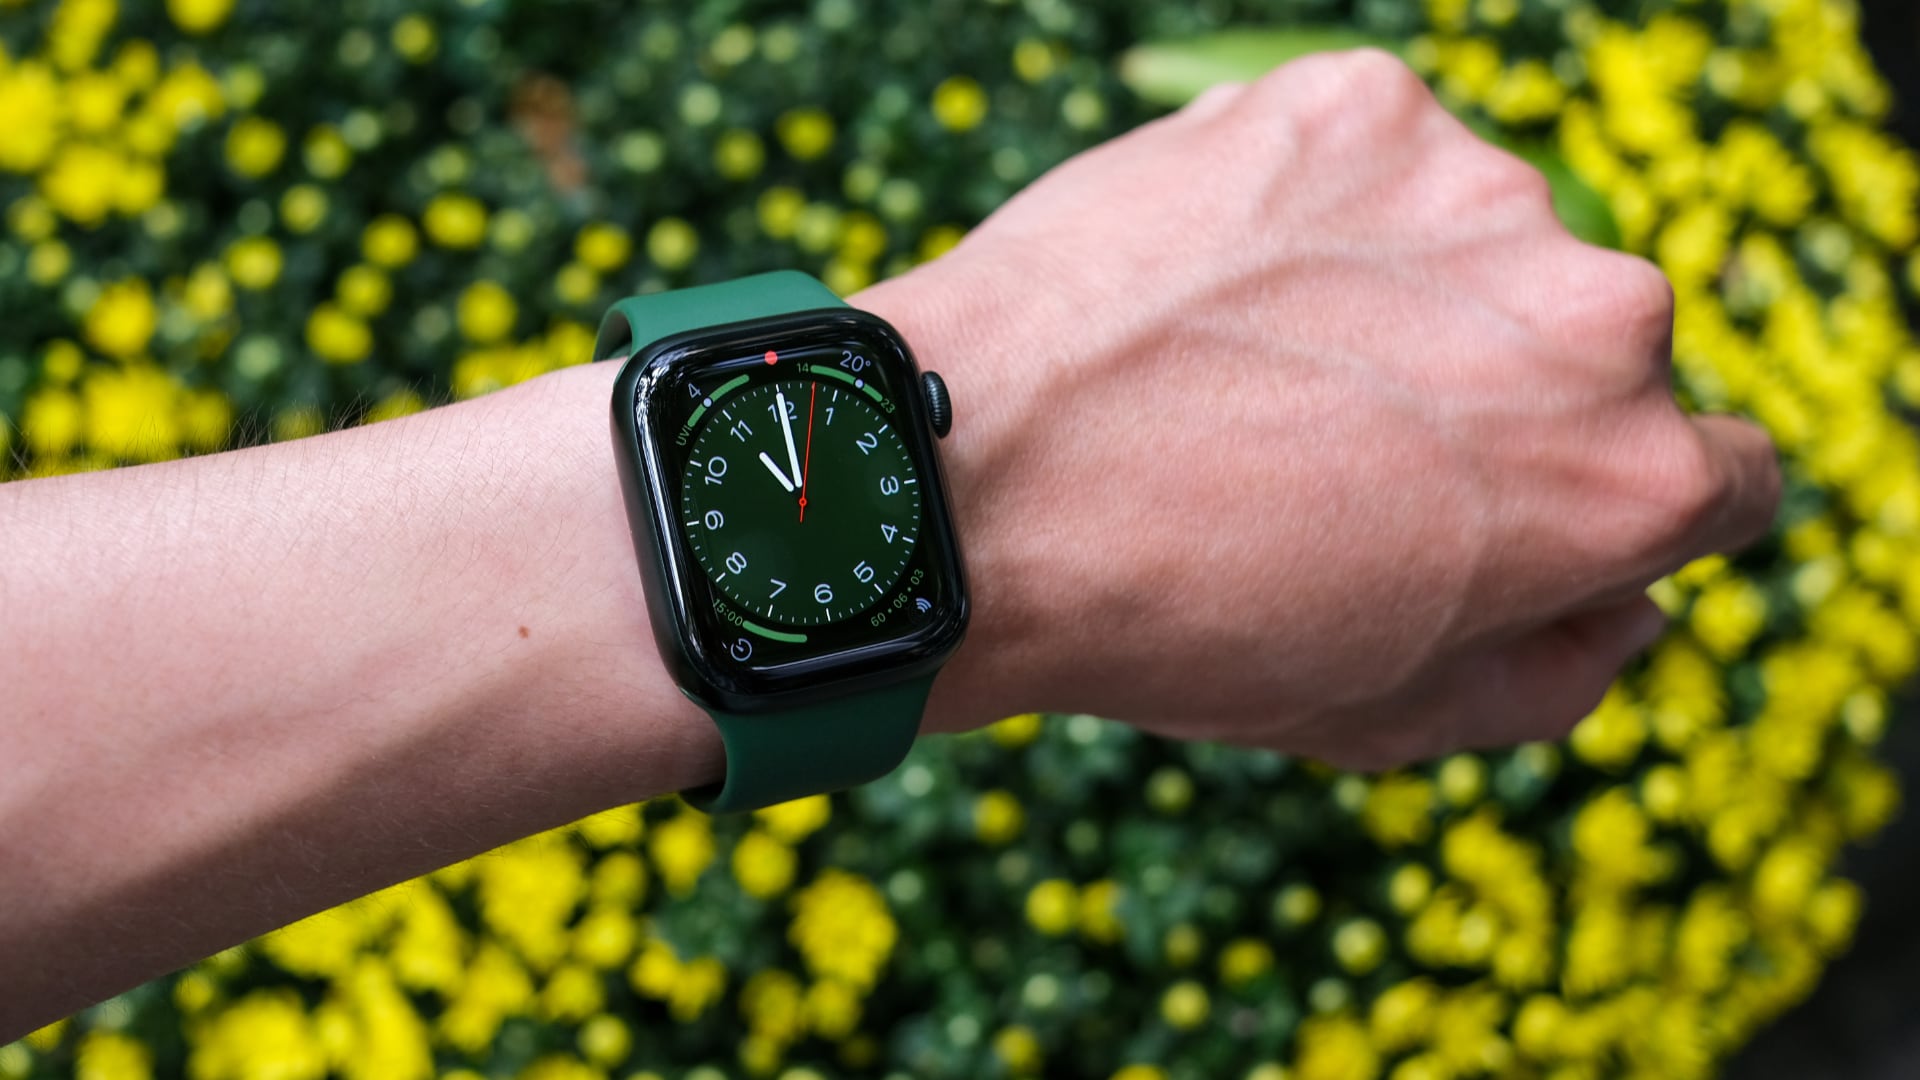 Green Apple Watch Series 7 worn on a male wrist